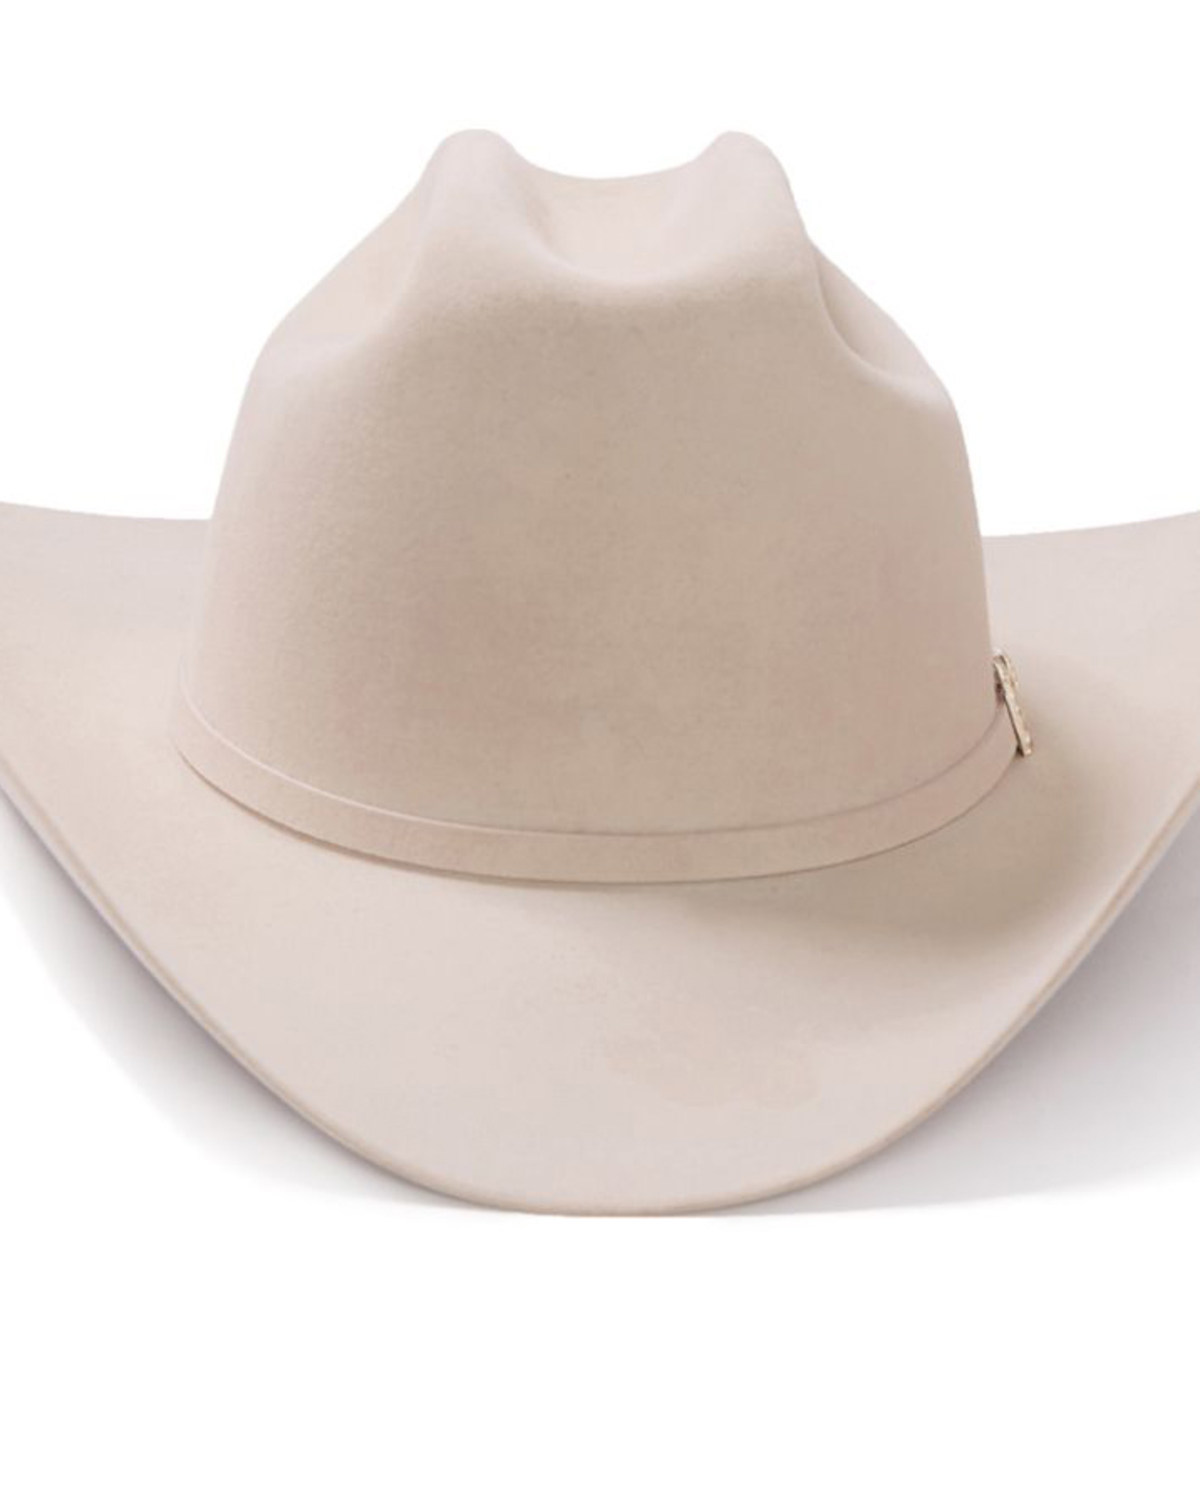 Stetson El Patron 48 Premier 30X Felt Cowboy Hat